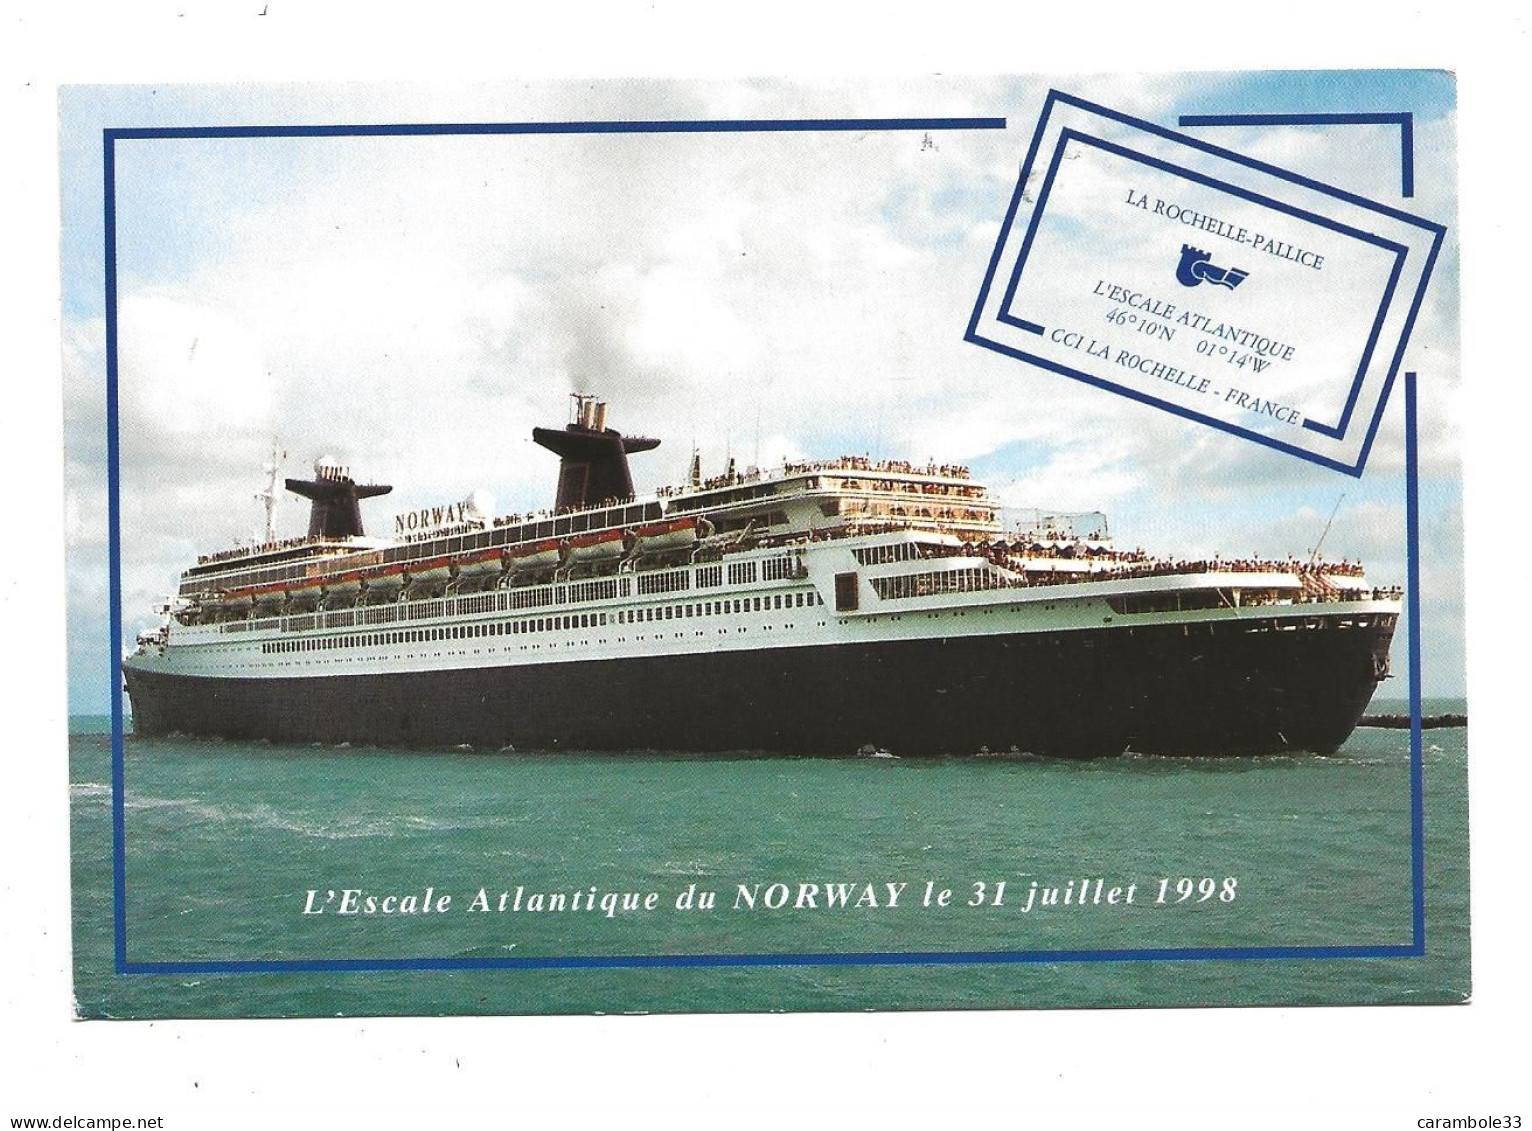 CPA   L'Escale Atlantique Du NORWAY Le 31 Juillet 1998 à LA ROCHELLE-PALLICE  écrite  (1703) - Paquebots